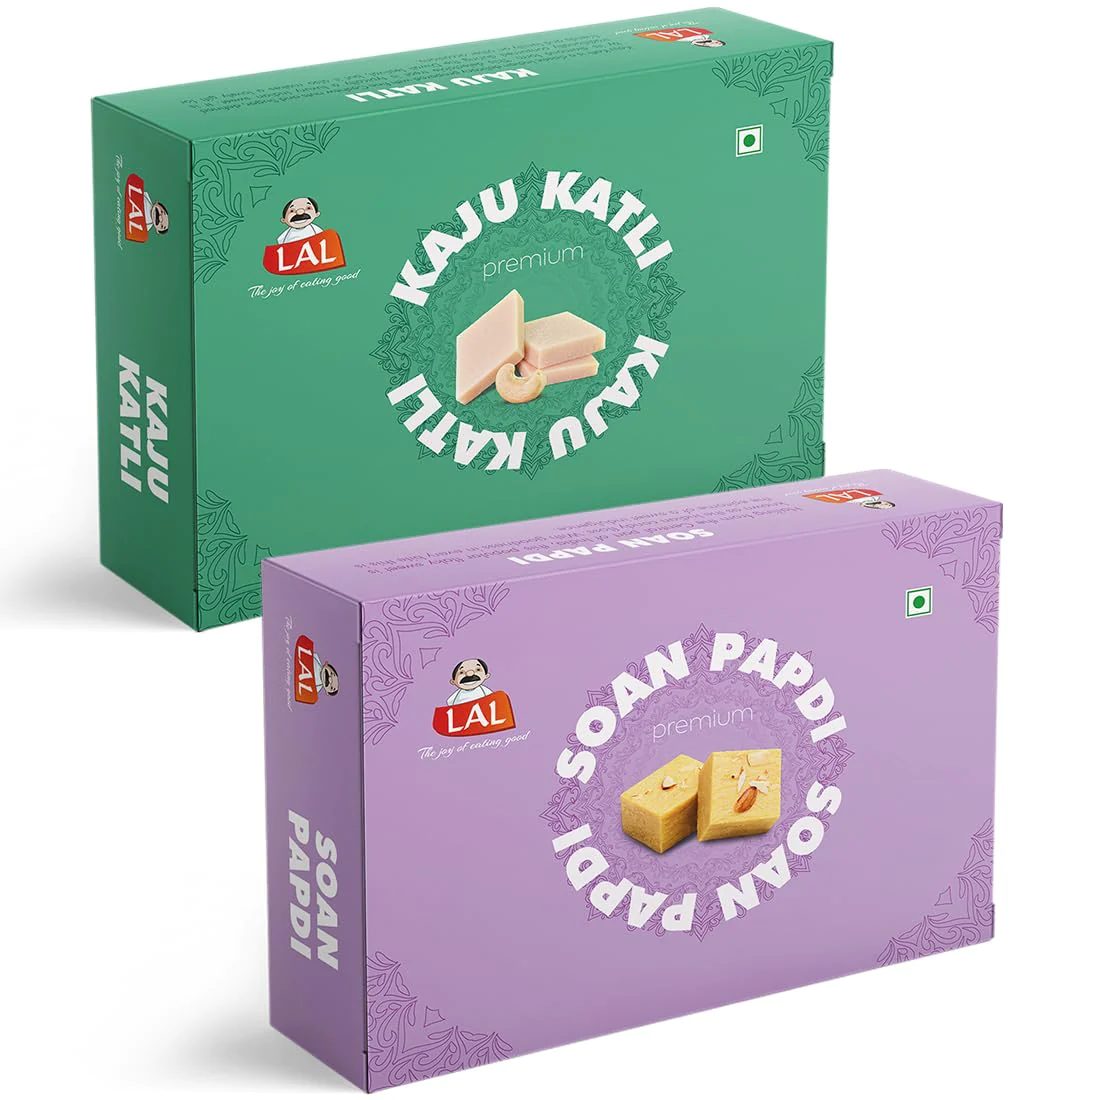 Lal Sweets Kaju Katli 400gm & Soan Papdi Premium 400gm